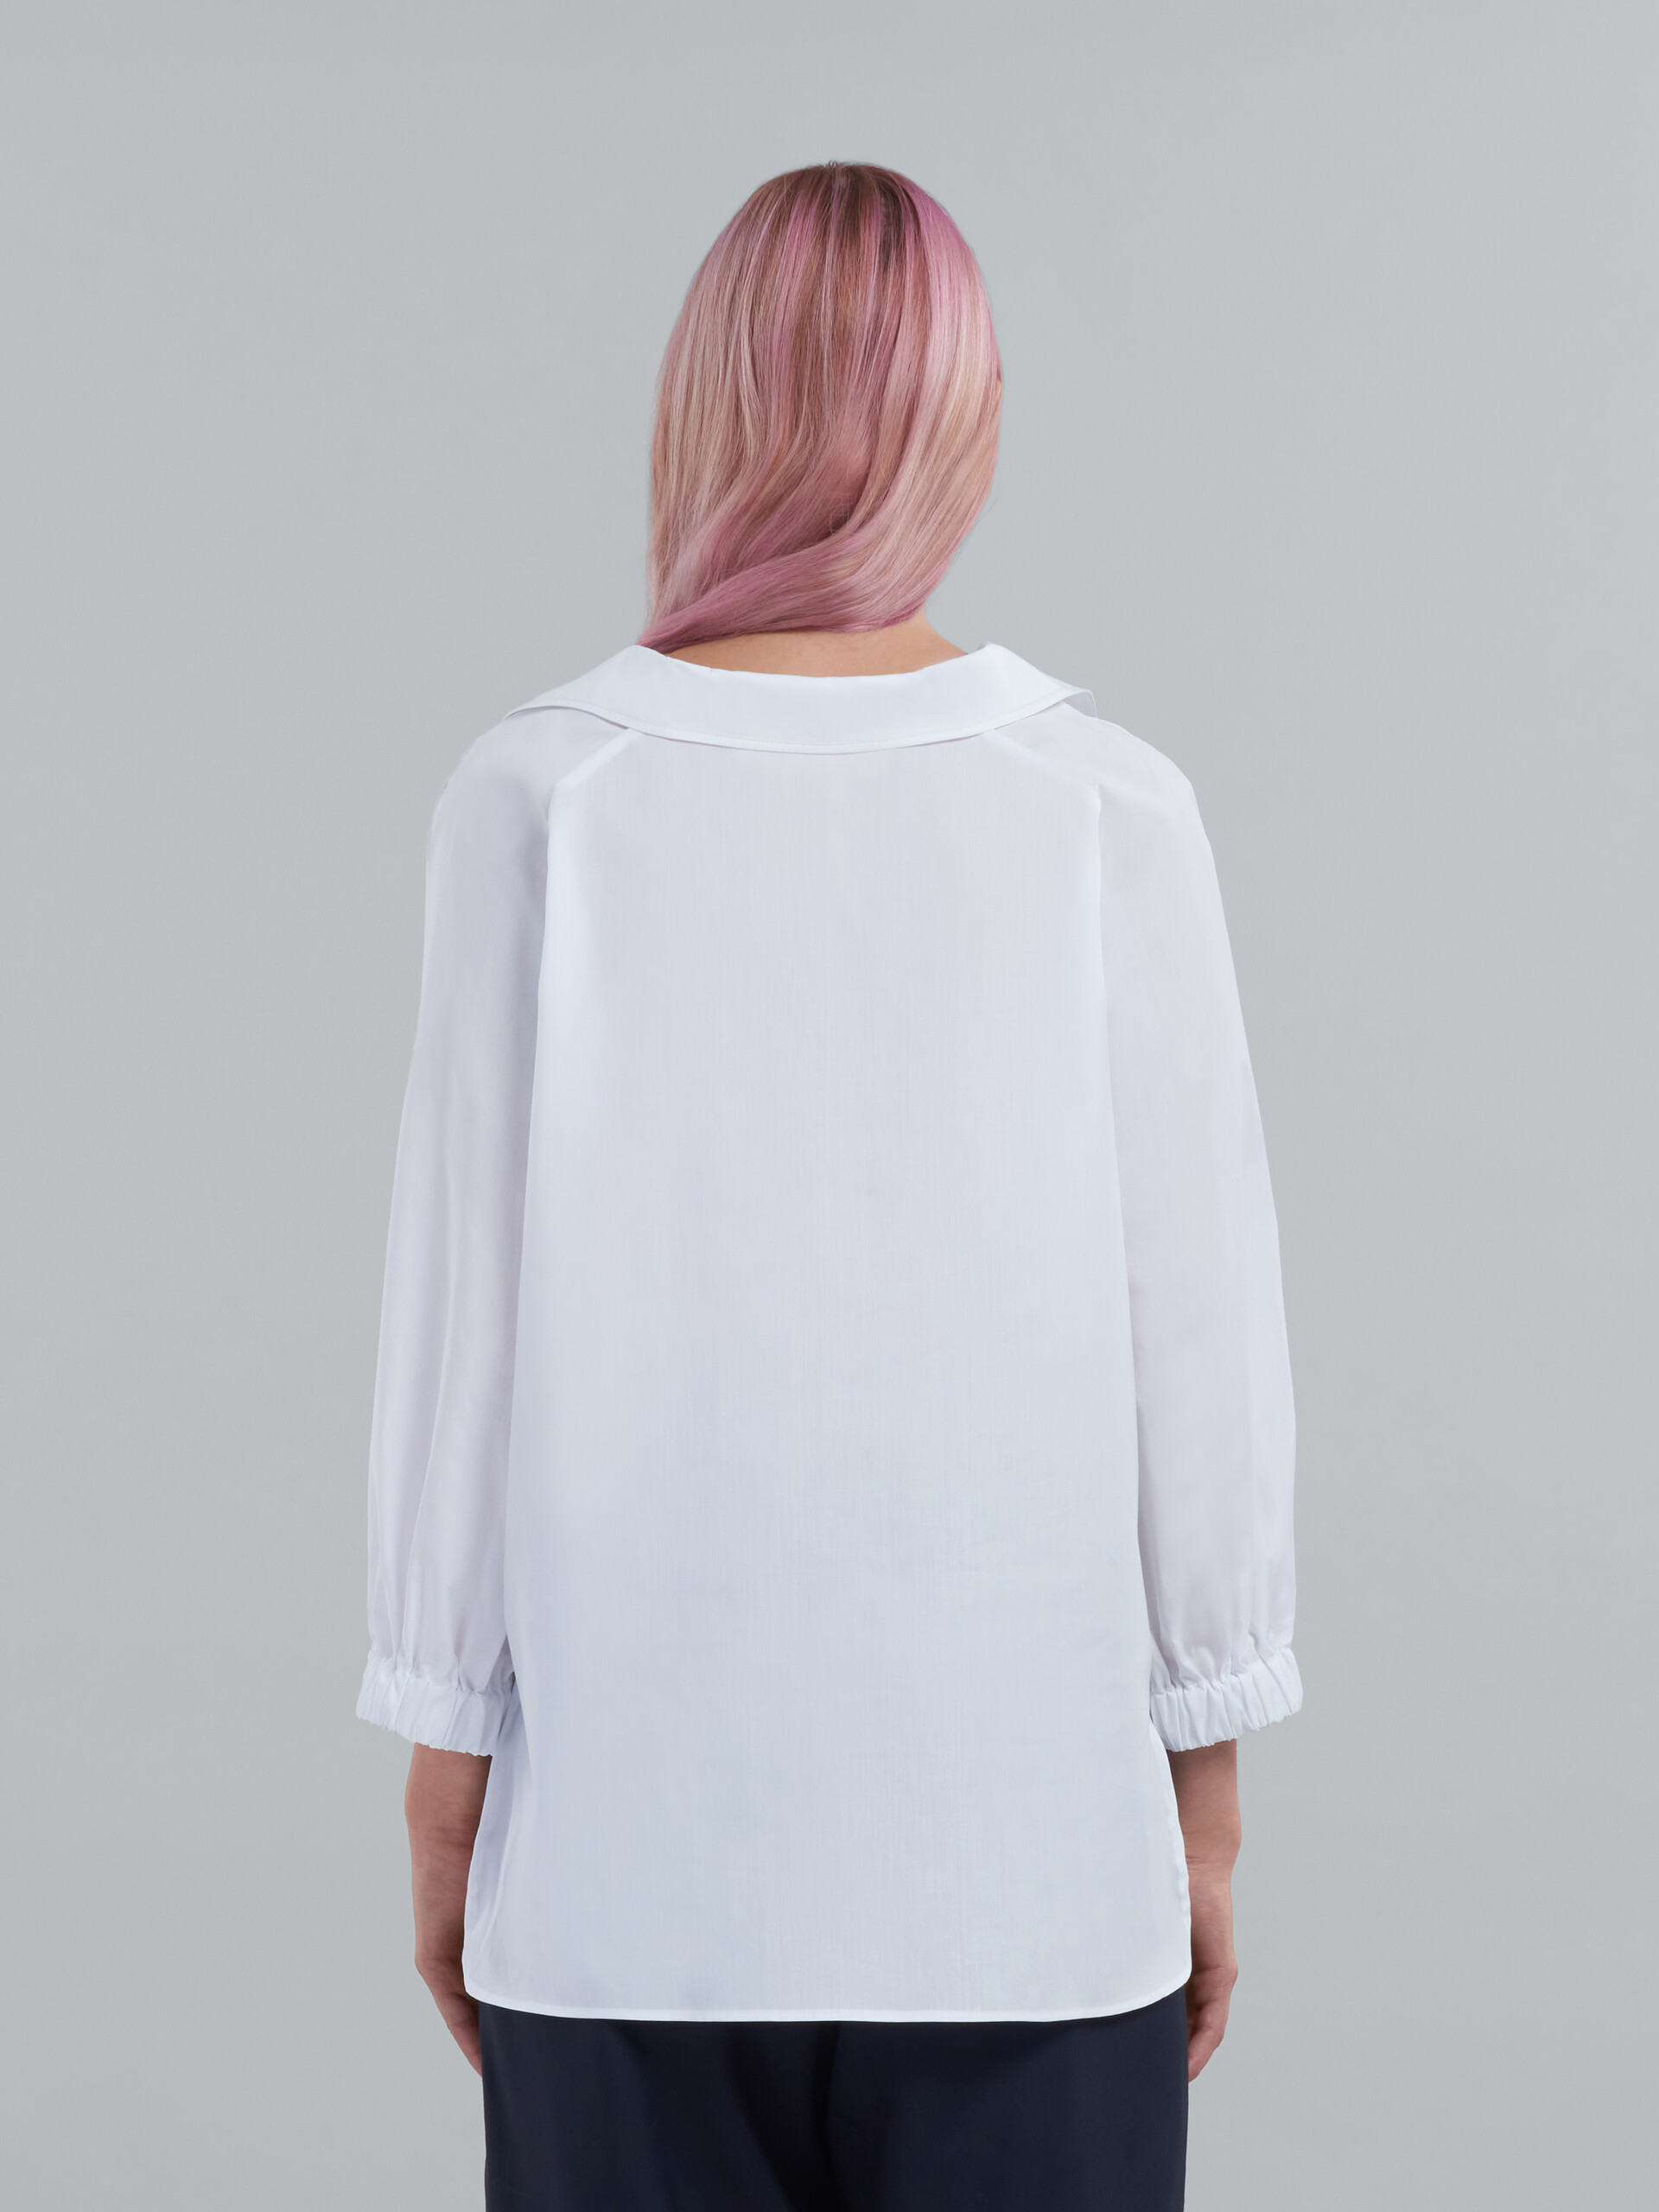 Top mit quadratischem Halsausschnitt aus rosafarbenem Bio-Popeline - Hemden - Image 3